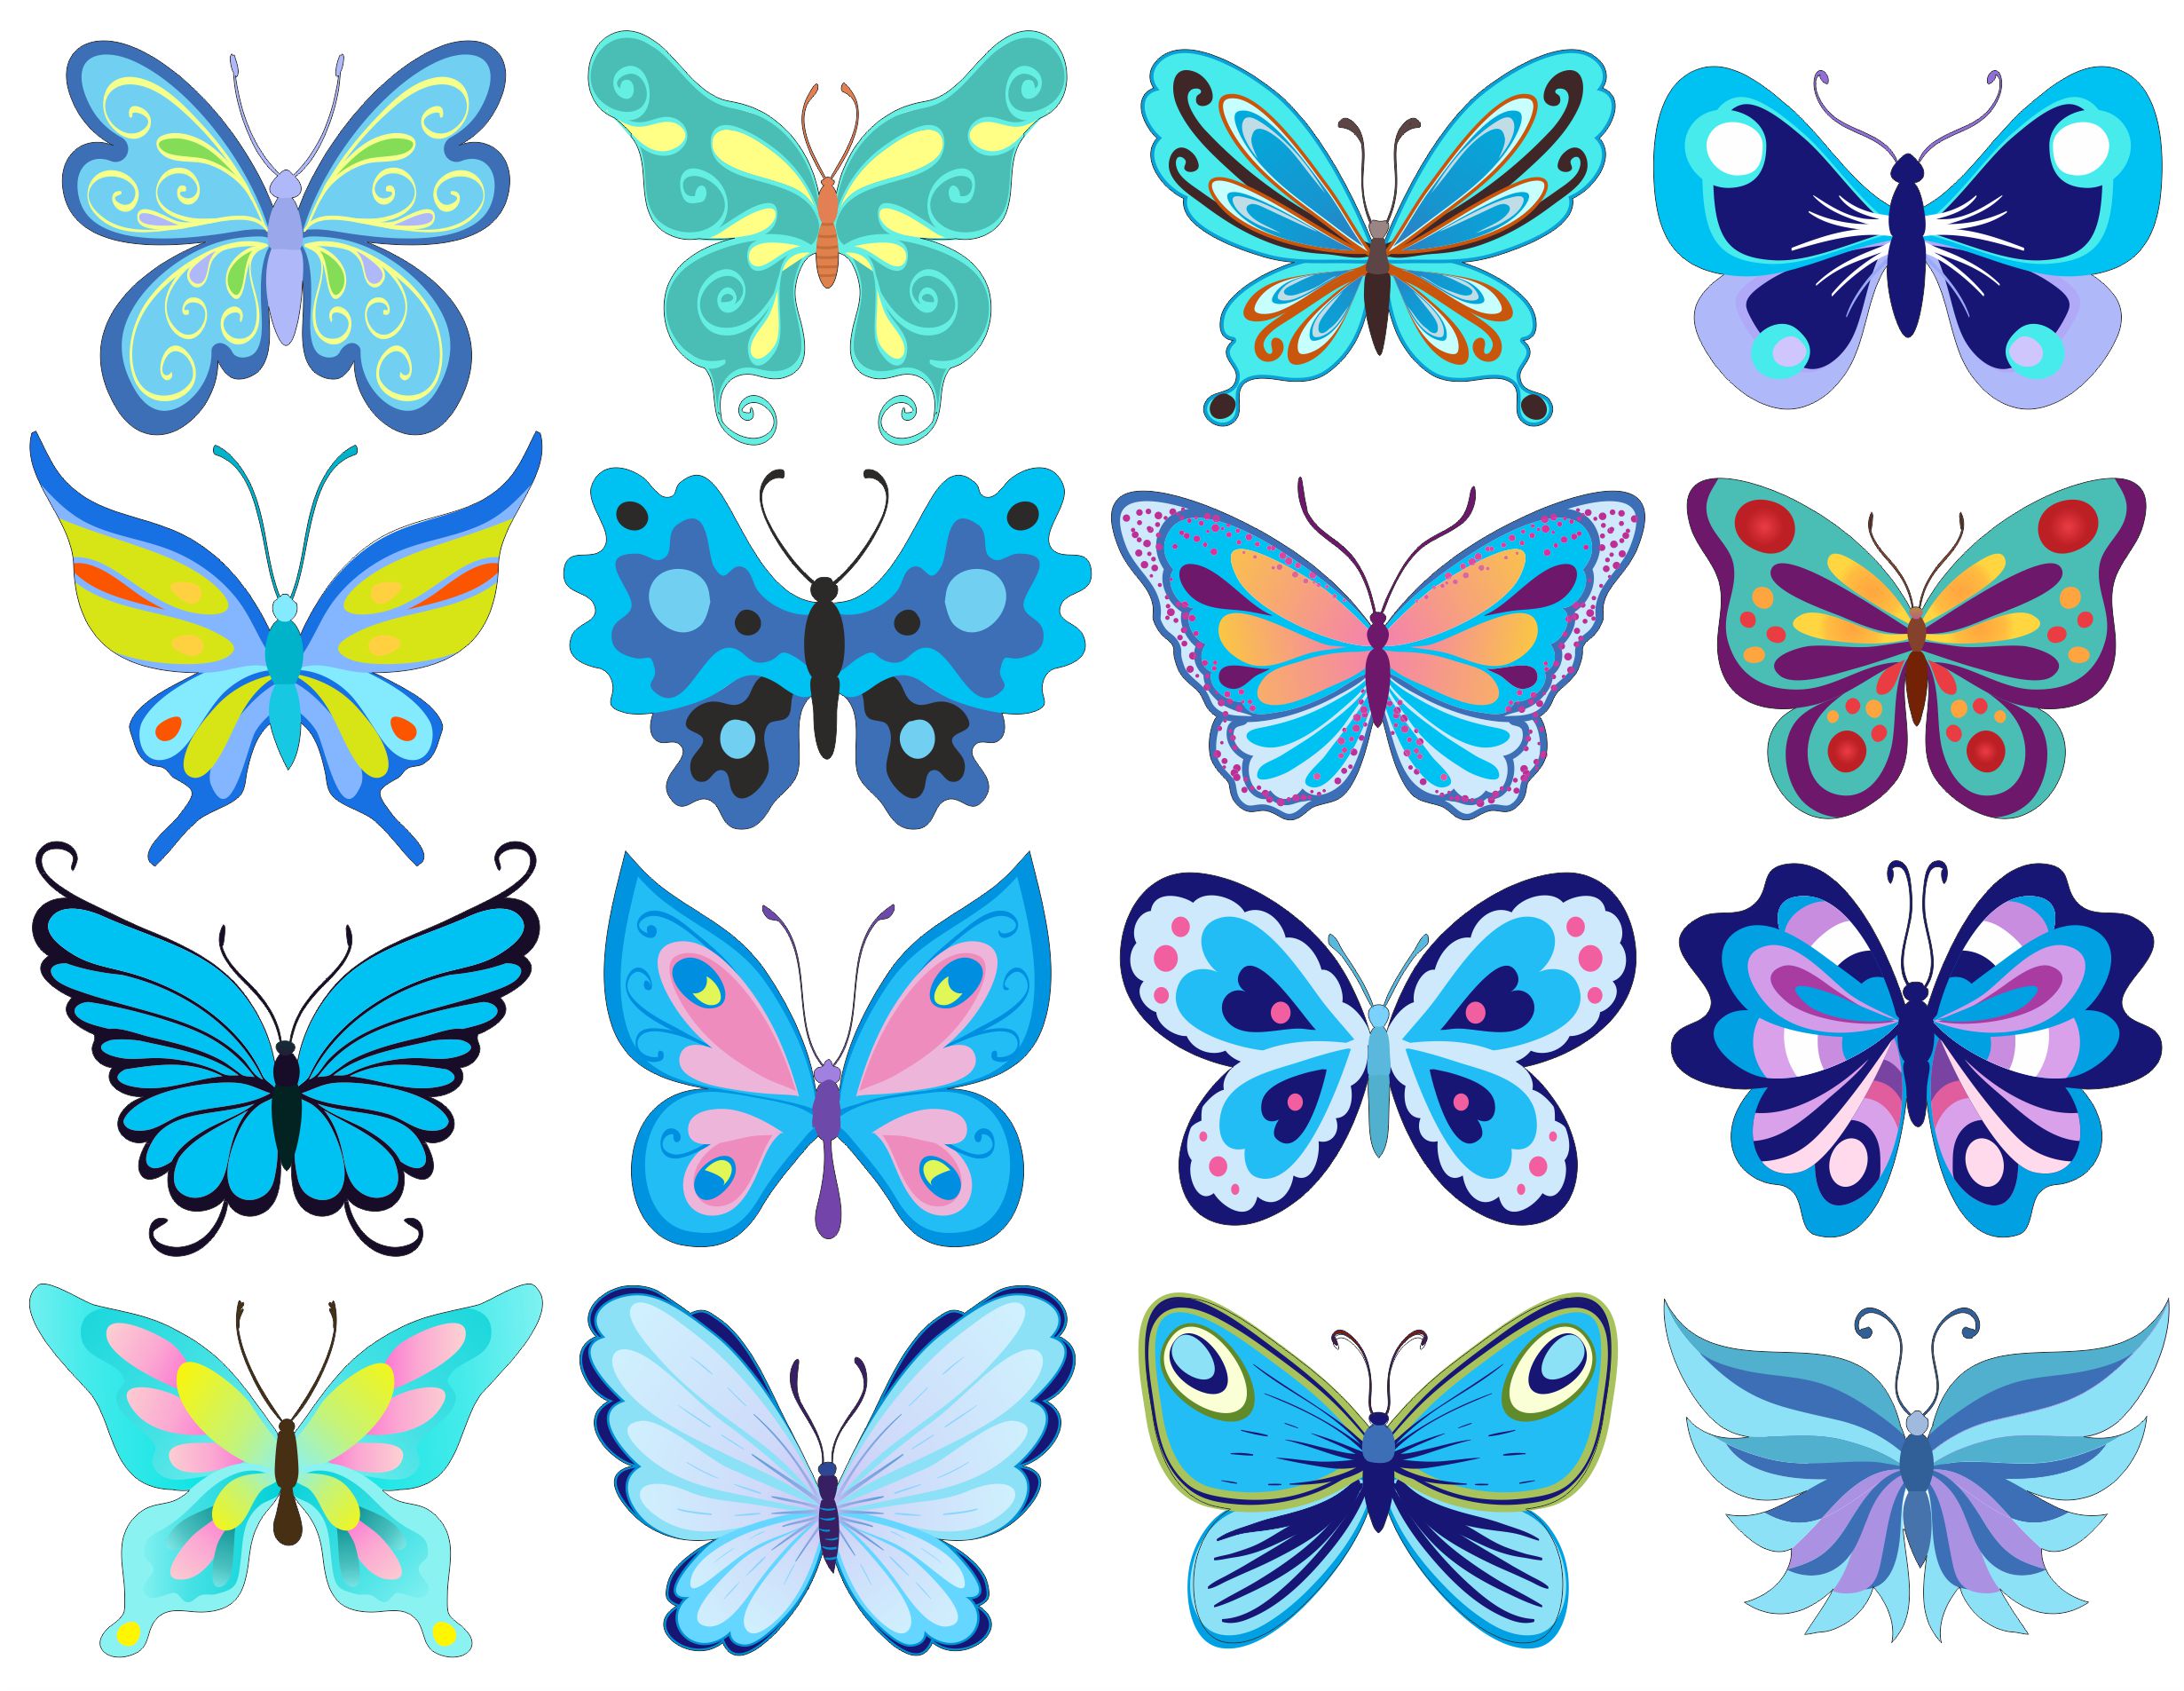 Цветной трафарет. Бабочки картинки для печати цветные. Бабочки для вырезания цветные. Наклейки для распечатки бабочки. Бабочки трафареты для вырезания цветные.